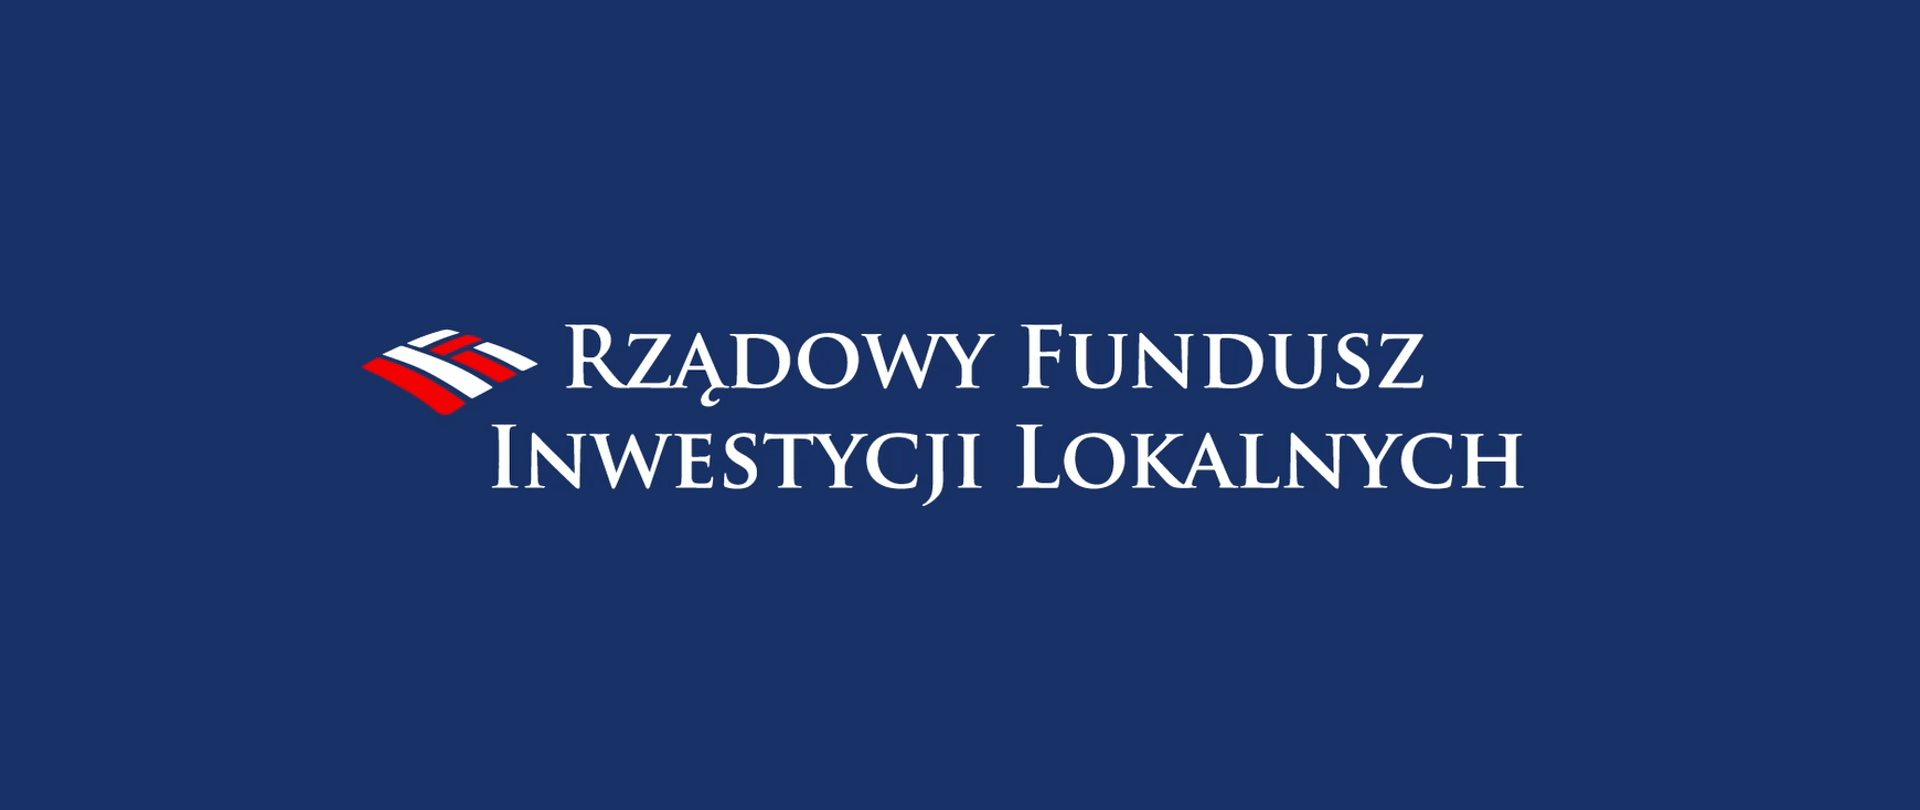 Prawie 5,5 mln zł z Rządowego Funduszu Inwestycji Lokalnych!